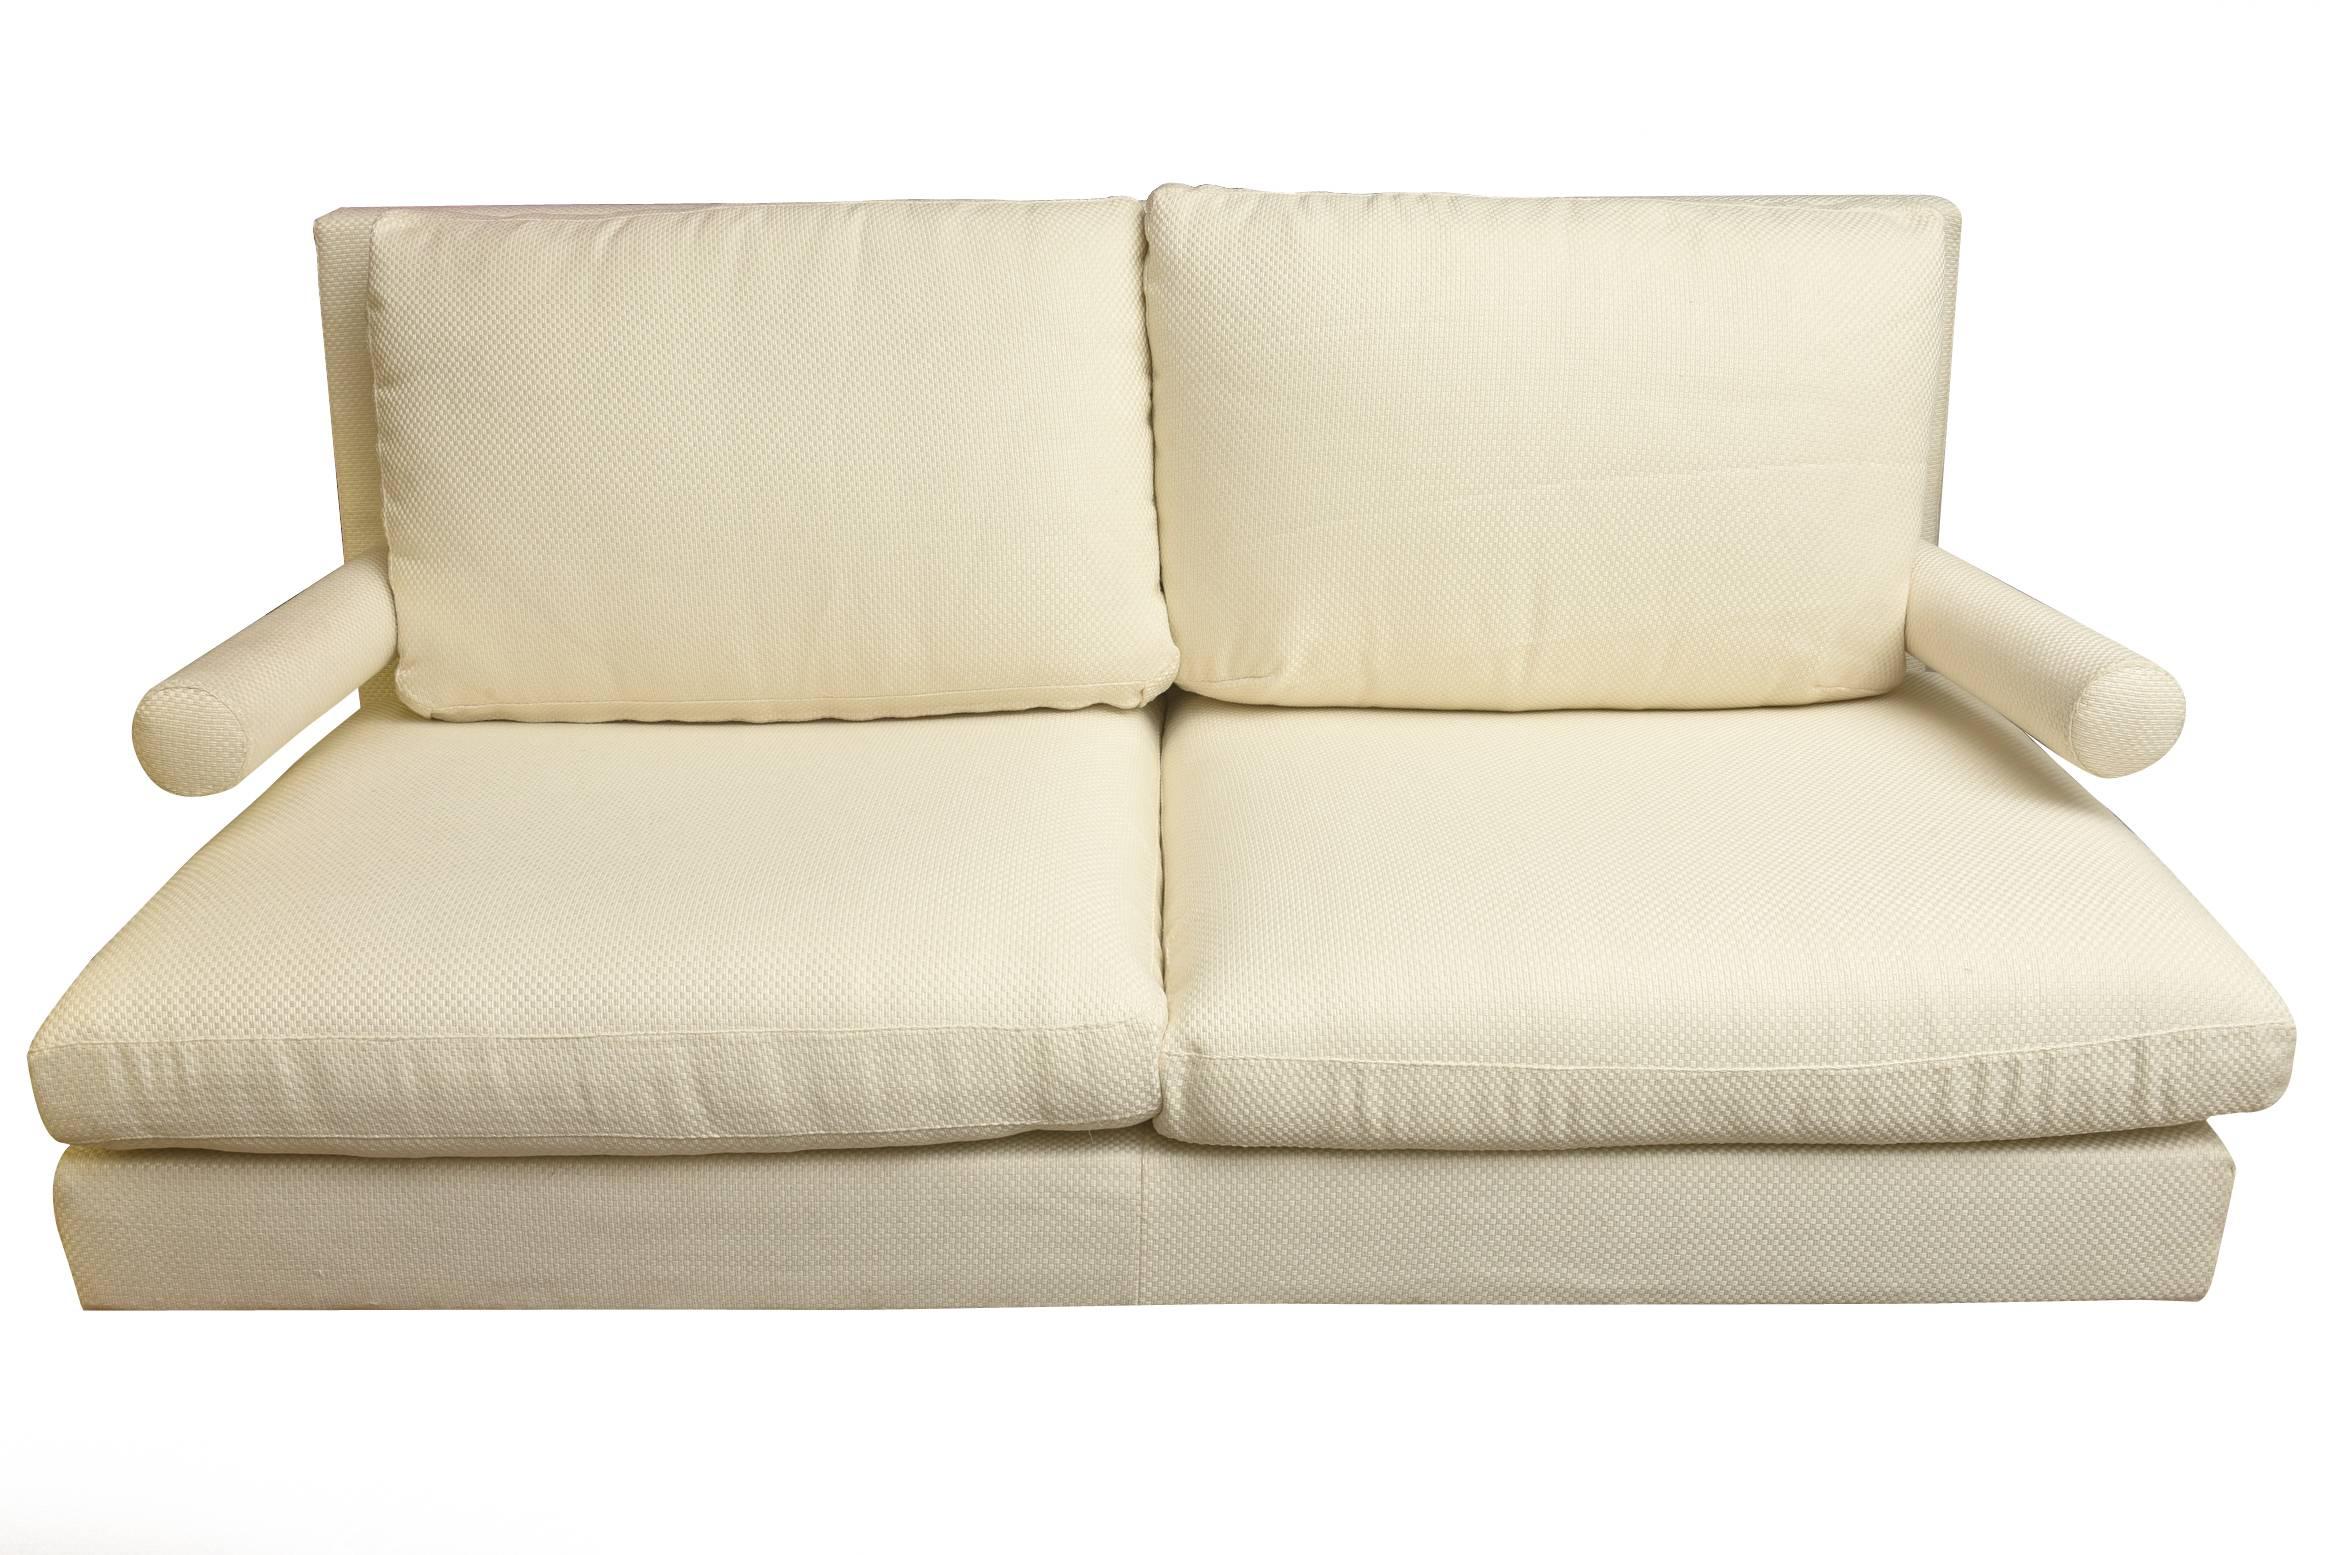 Ce canapé et ou causeuse B&B italien nouvellement tapissé date des années 1980. Il est réalisé dans un tissu d'ameublement à carreaux texturés blanc cassé. Les bras sculptés ajoutent une dimension. Il a des roues noires en métal à l'avant. Il a un